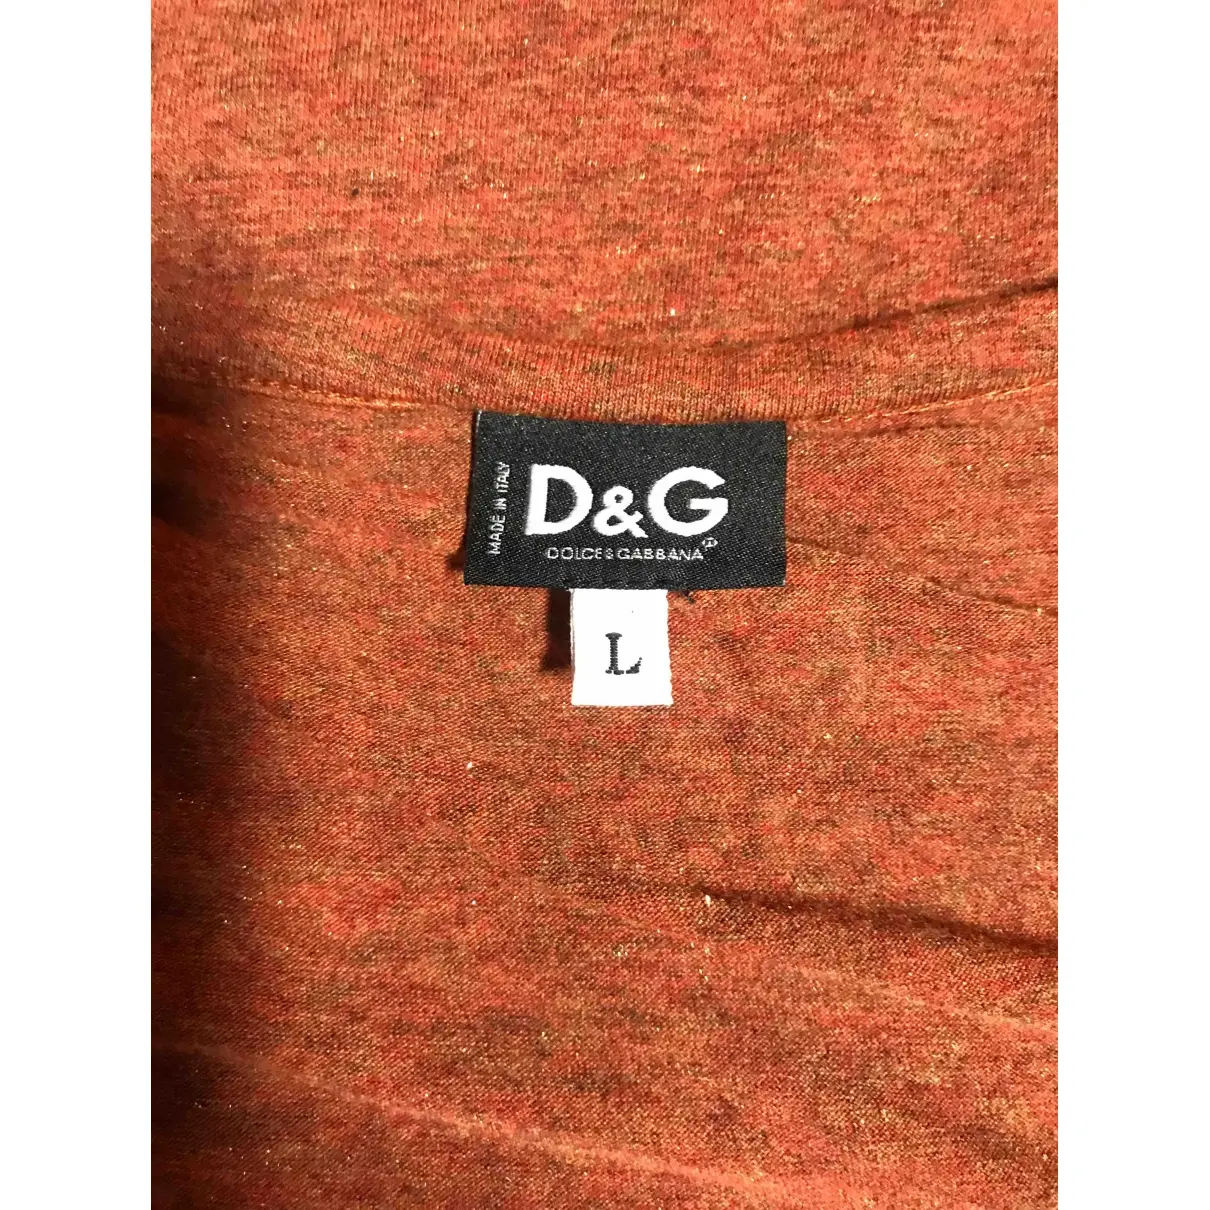 Buy D&G T-shirt online